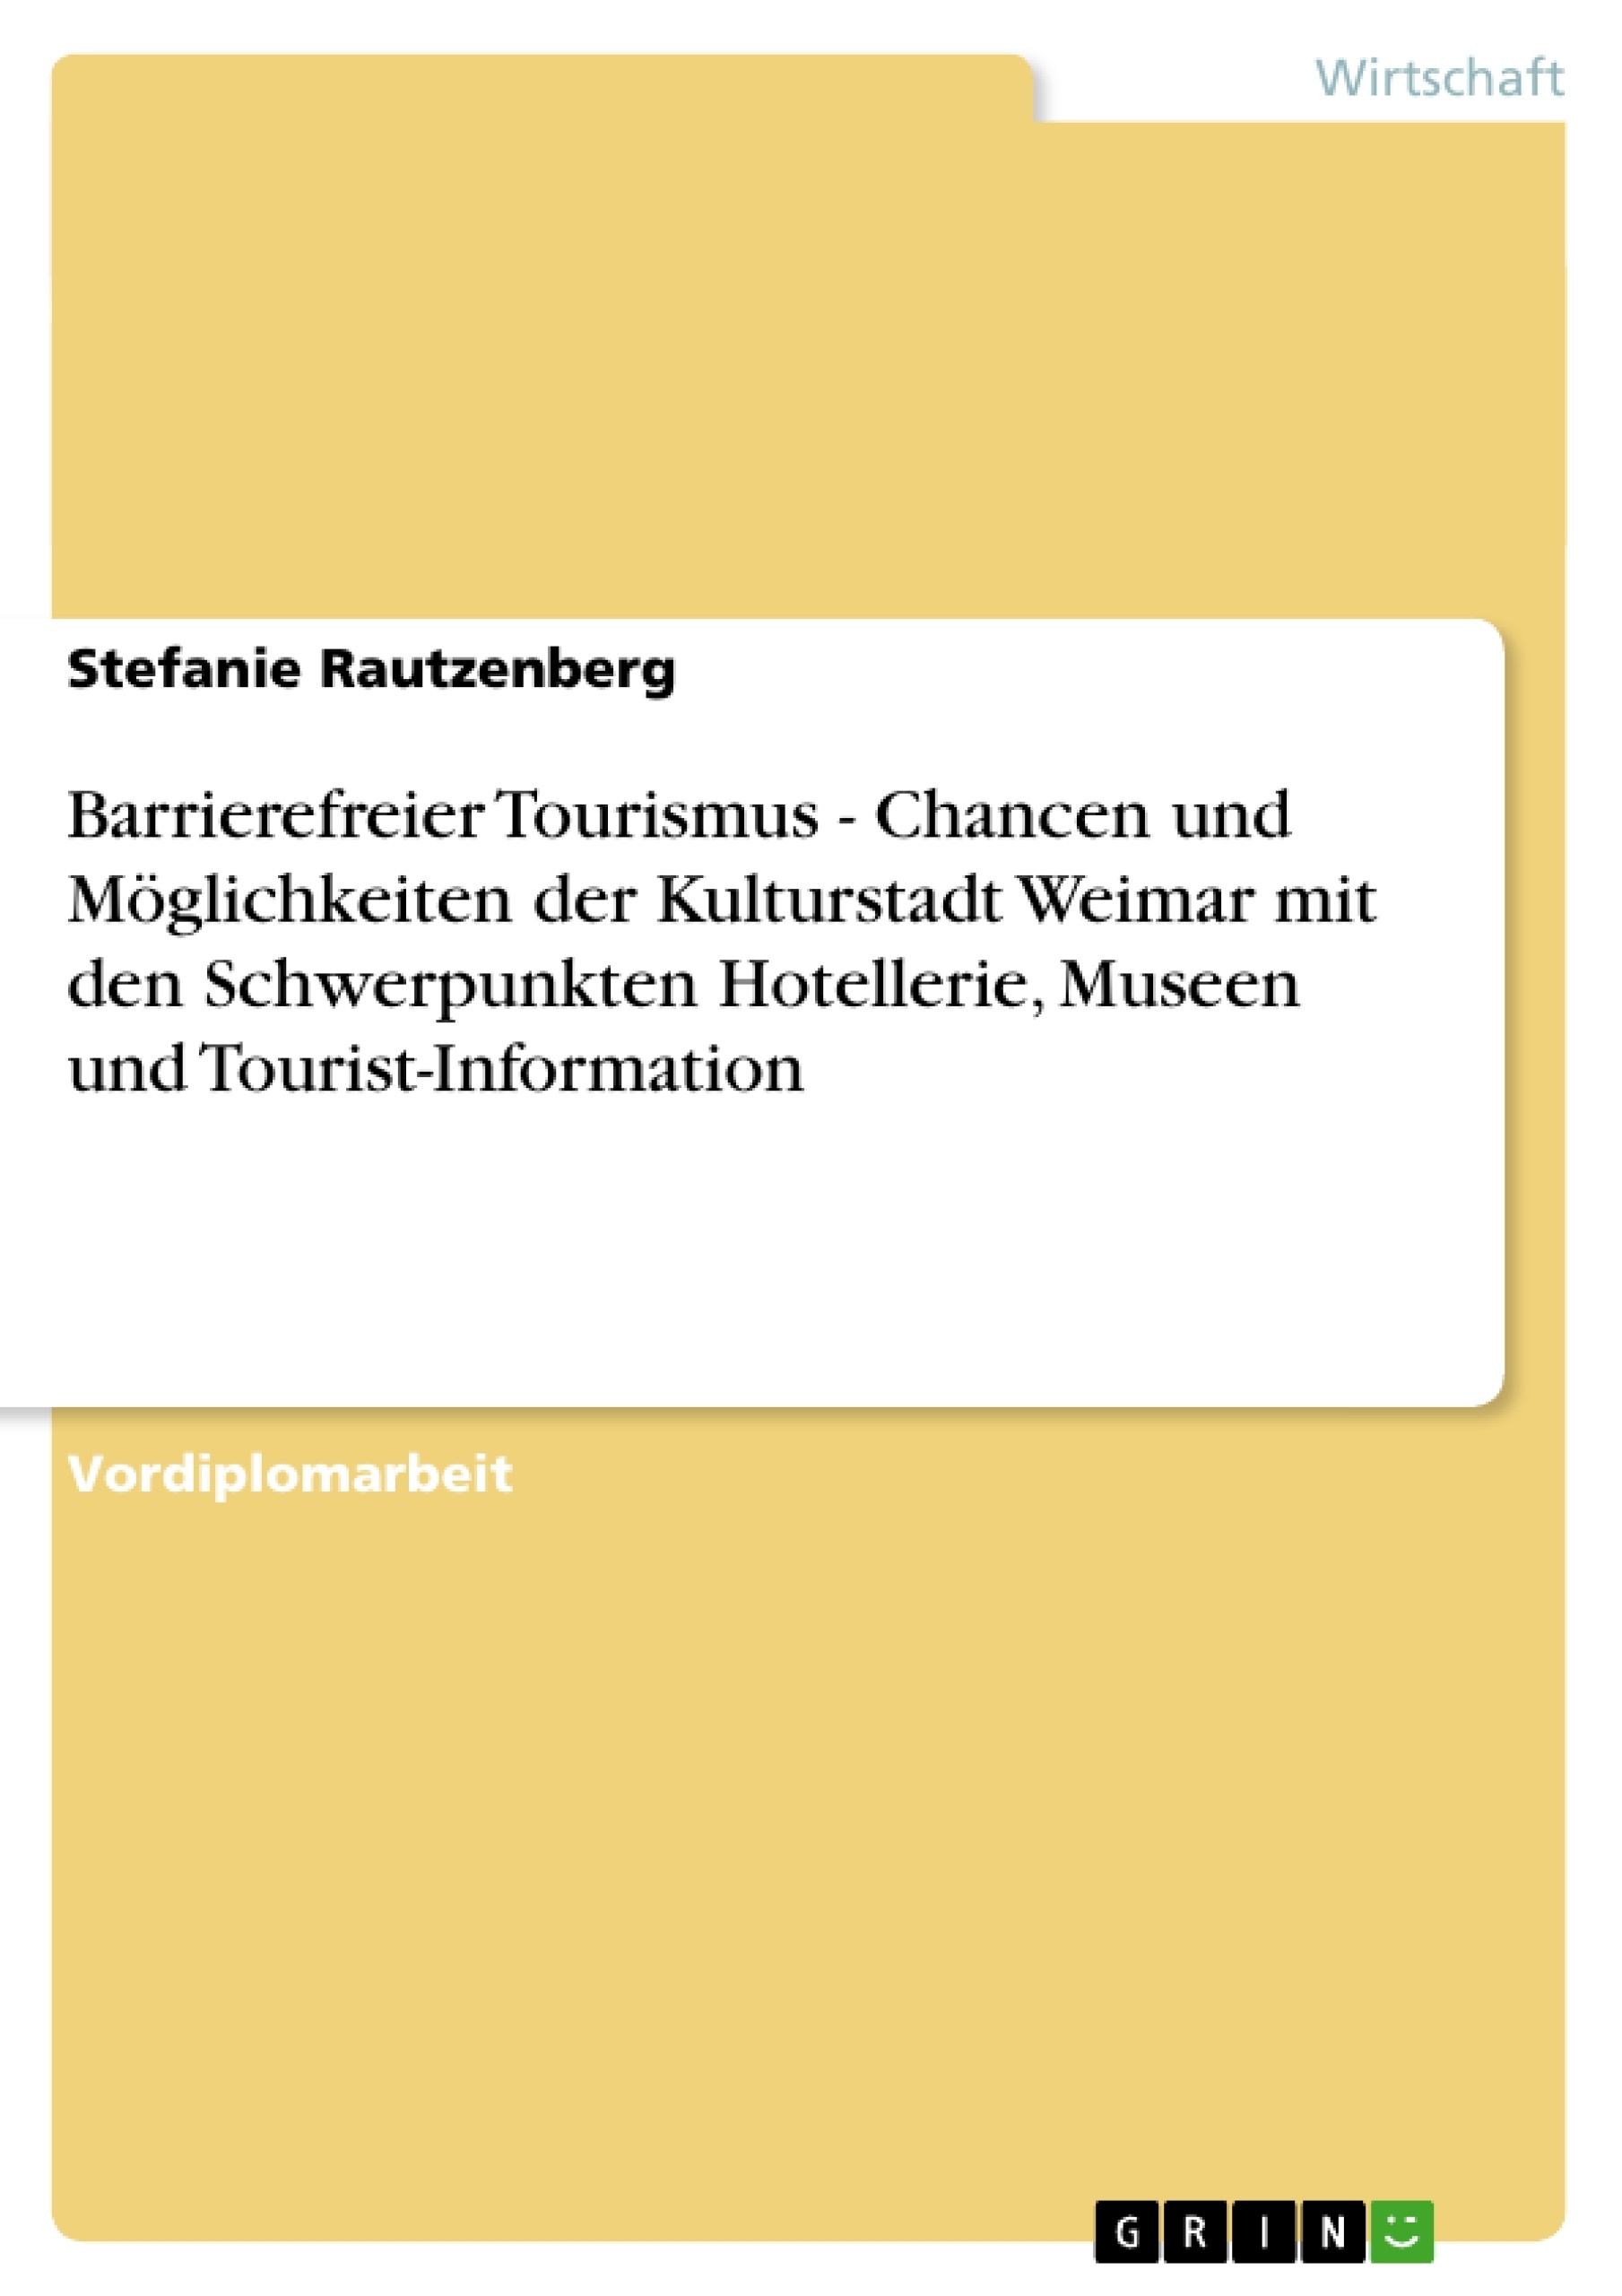 Titel: Barrierefreier Tourismus - Chancen und Möglichkeiten der Kulturstadt Weimar mit den Schwerpunkten Hotellerie, Museen und Tourist-Information